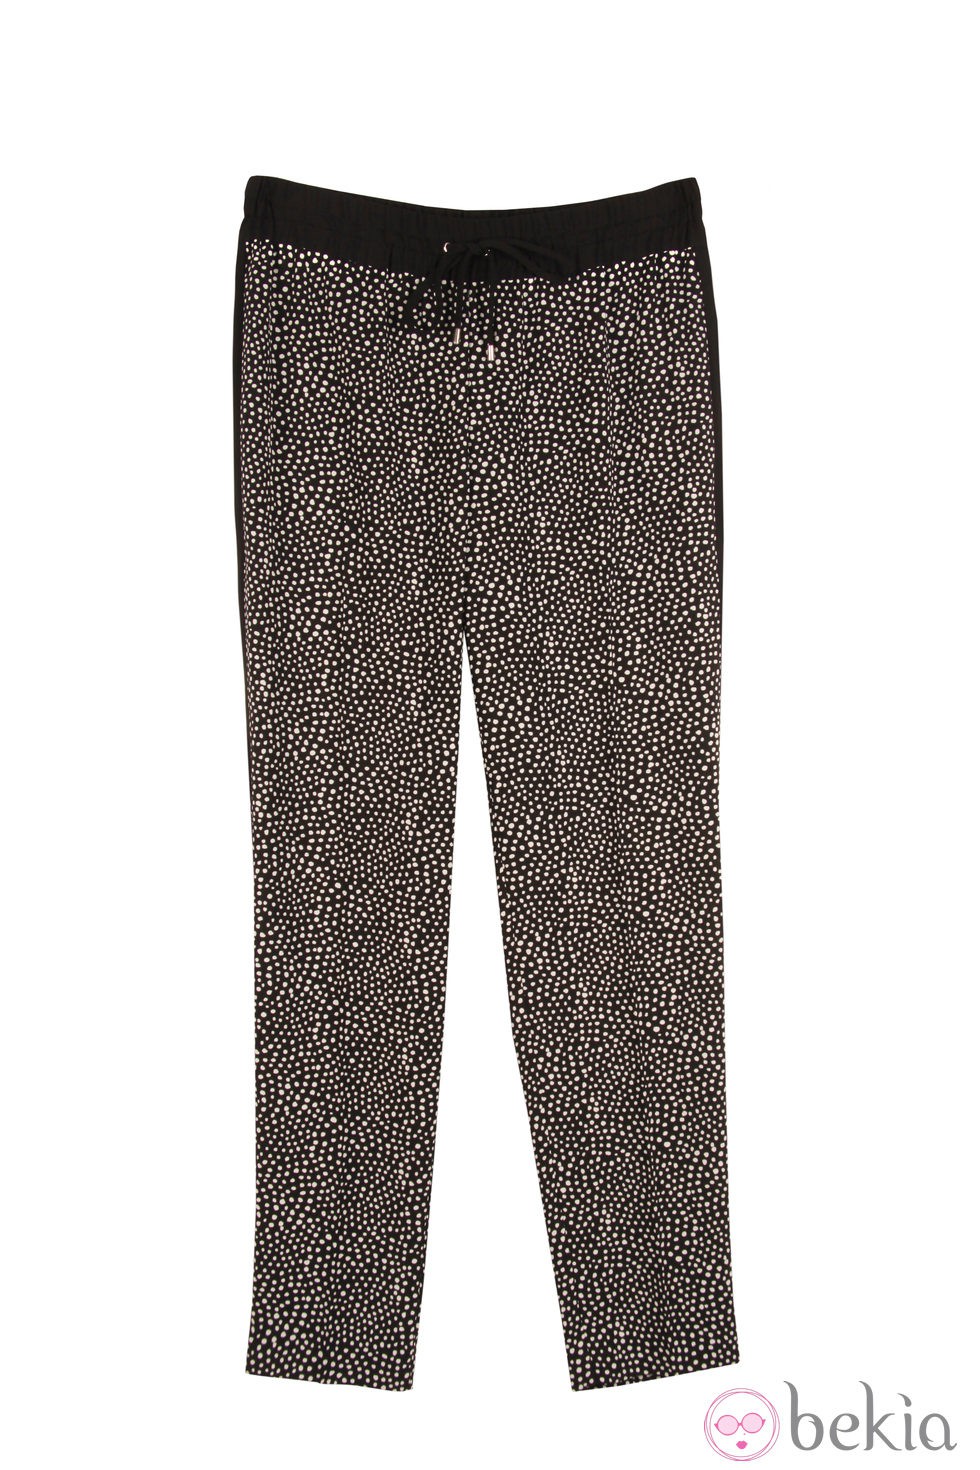 Pantalón estampado con cordón de la colección primavera/verano 2014 de Rachel Roy